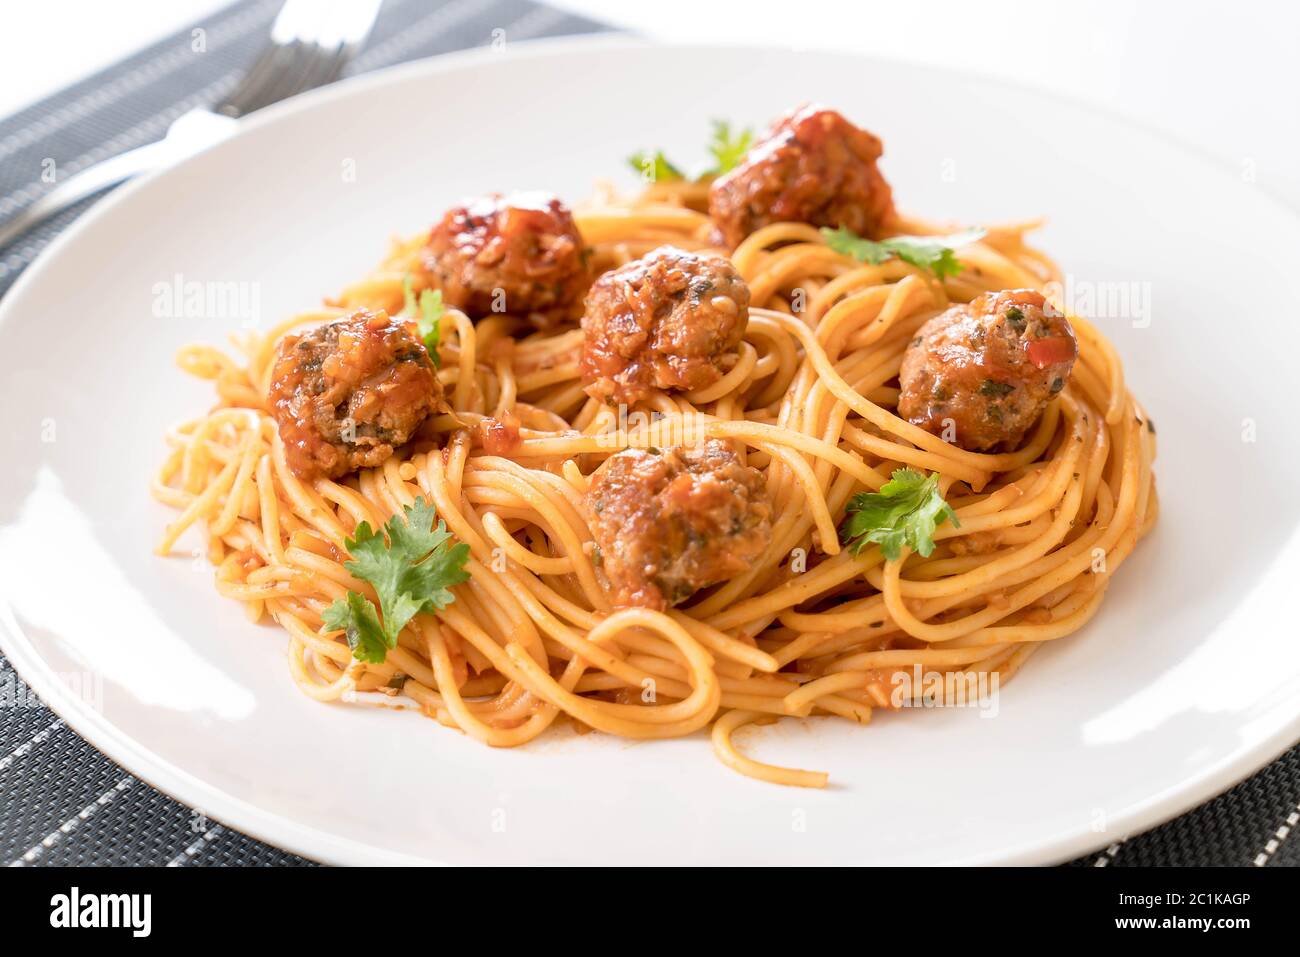 Spaghetti und Fleischbällchen - italienische Küche Stockfoto